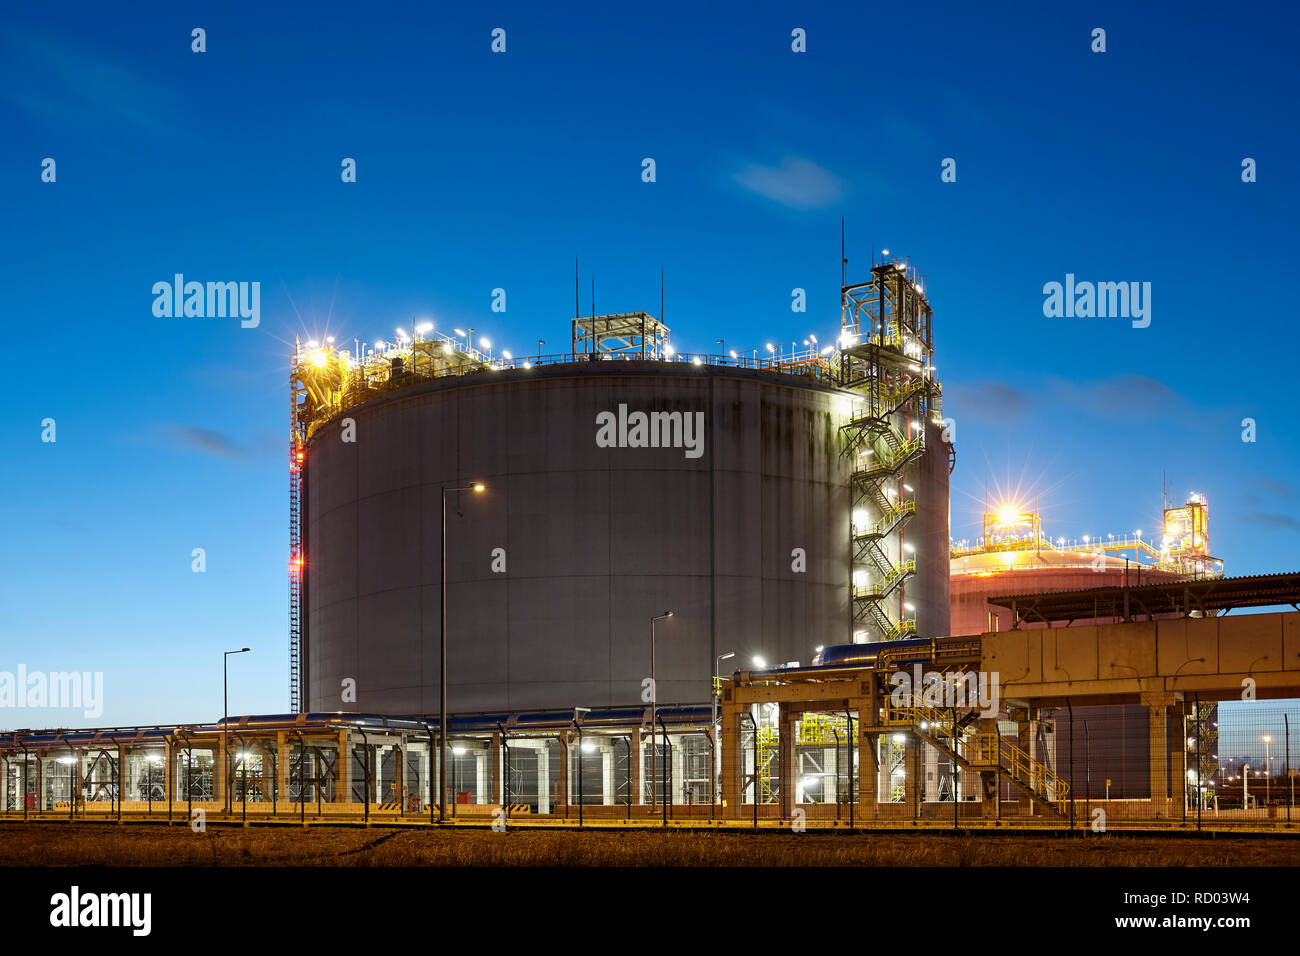 Liquefied natural gas (LNG) storage tank at dusk. Stock Photo